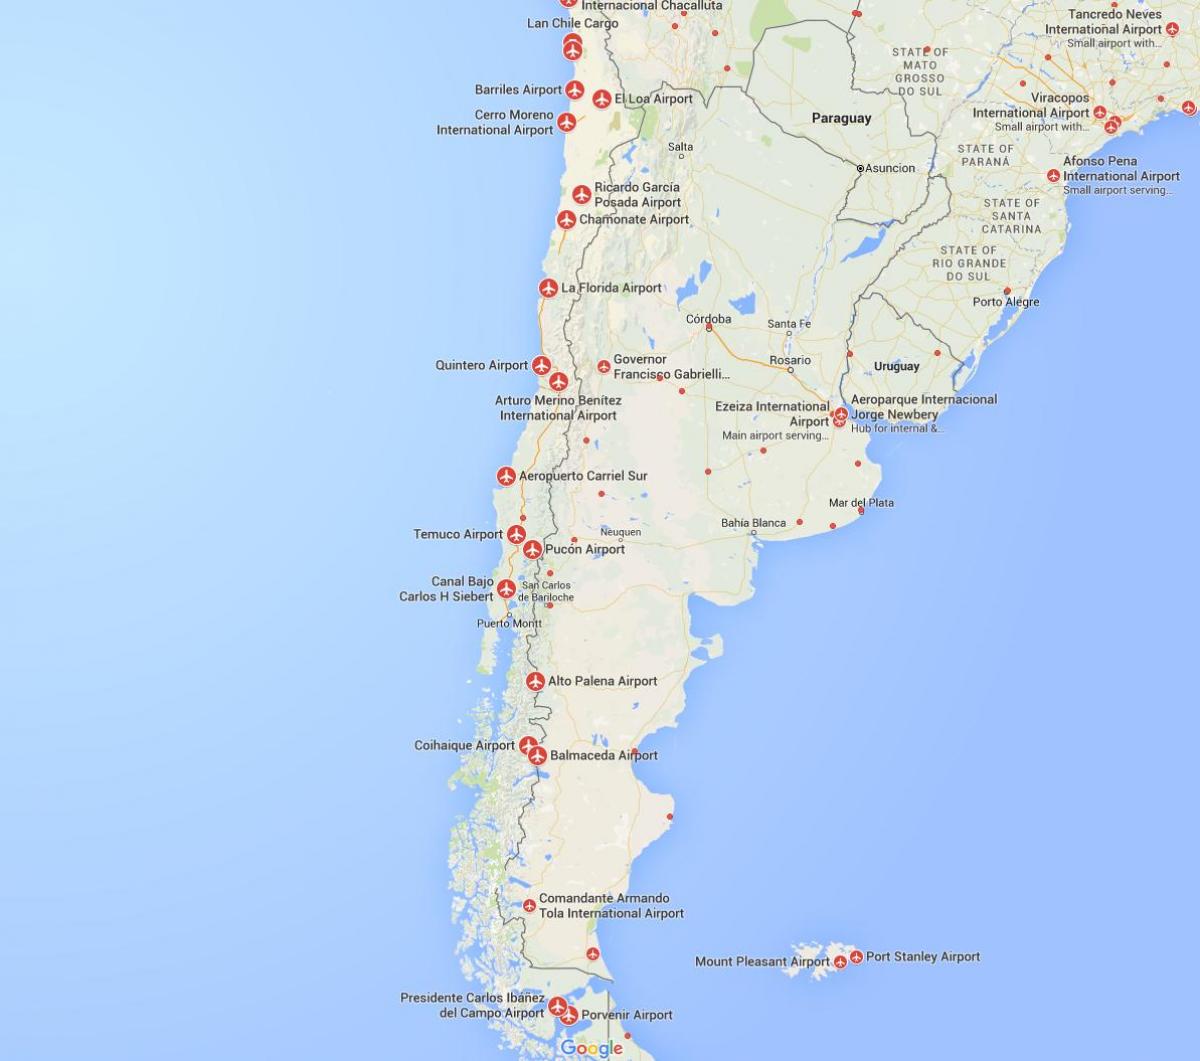 térkép repülőterek Chilében